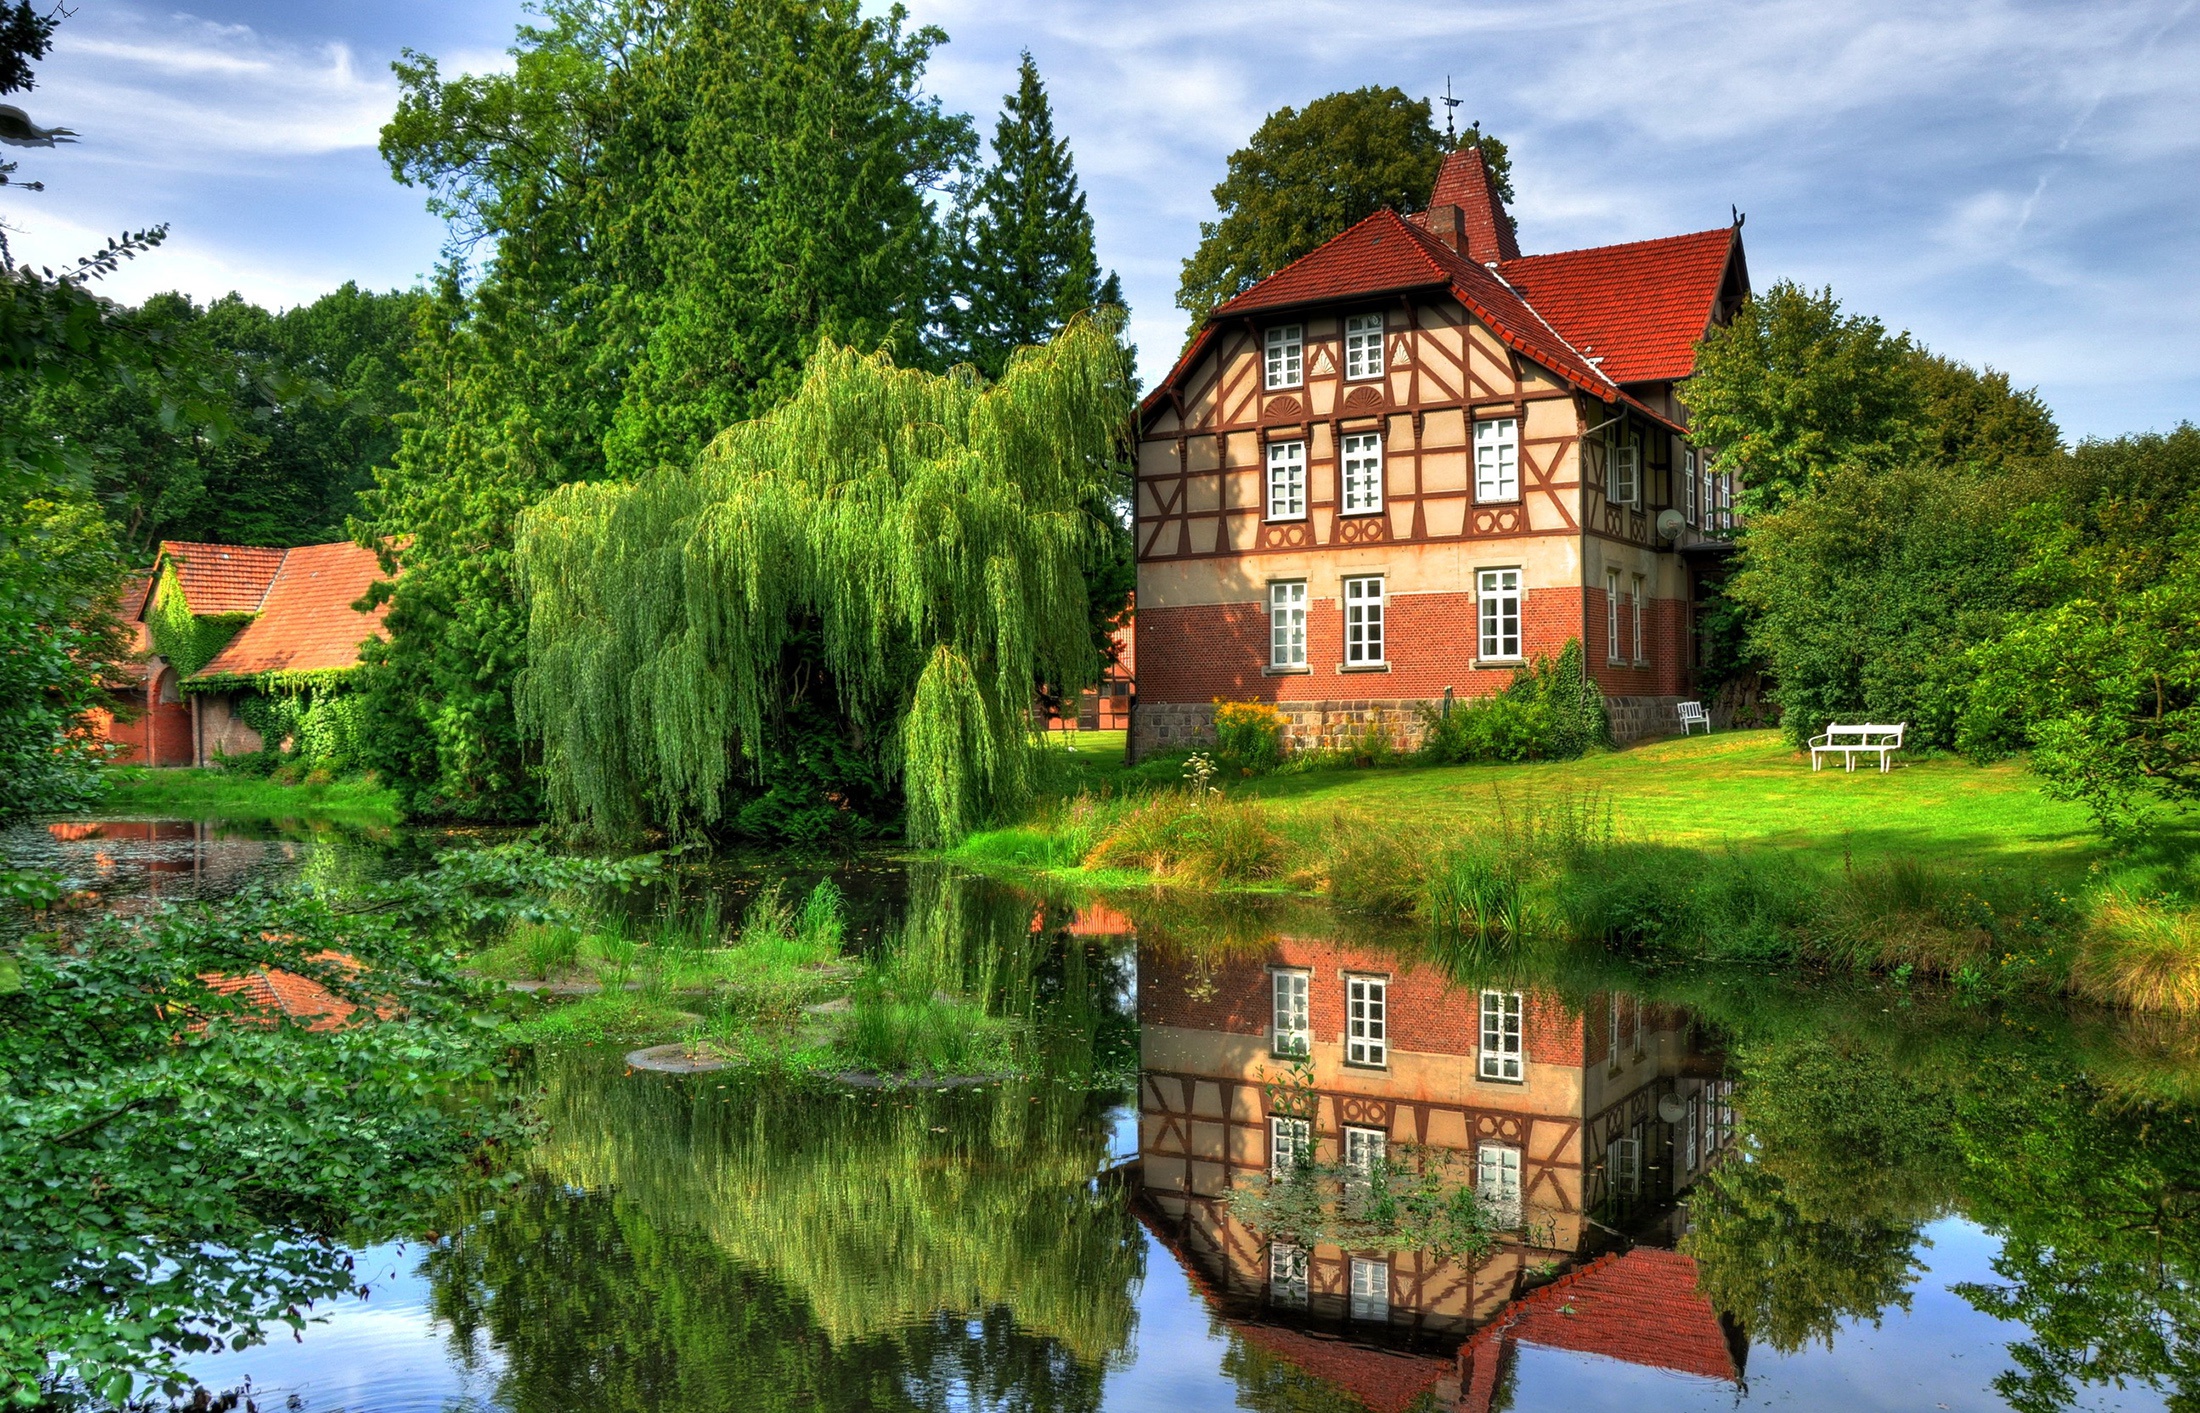 Germany home. Красивые домики на природе. Красивый дом на природе. Дом у реки. Красивый дом у воды.